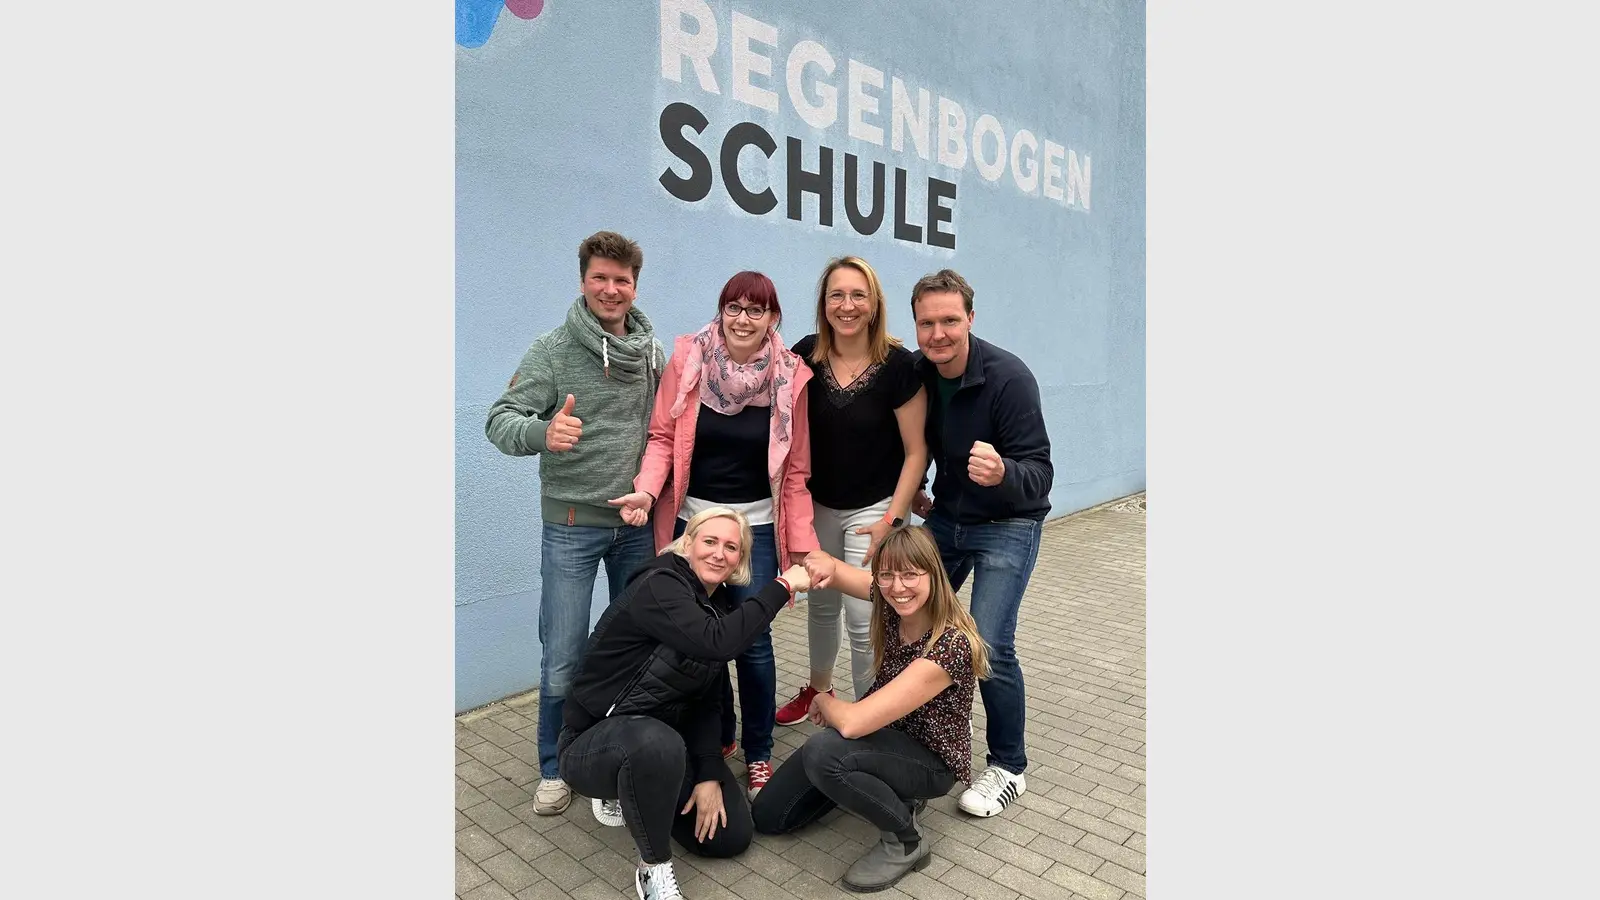 Die neuen Mitglieder des Fördervereins der Regenbogenschule Taucha (Foto: Verein)